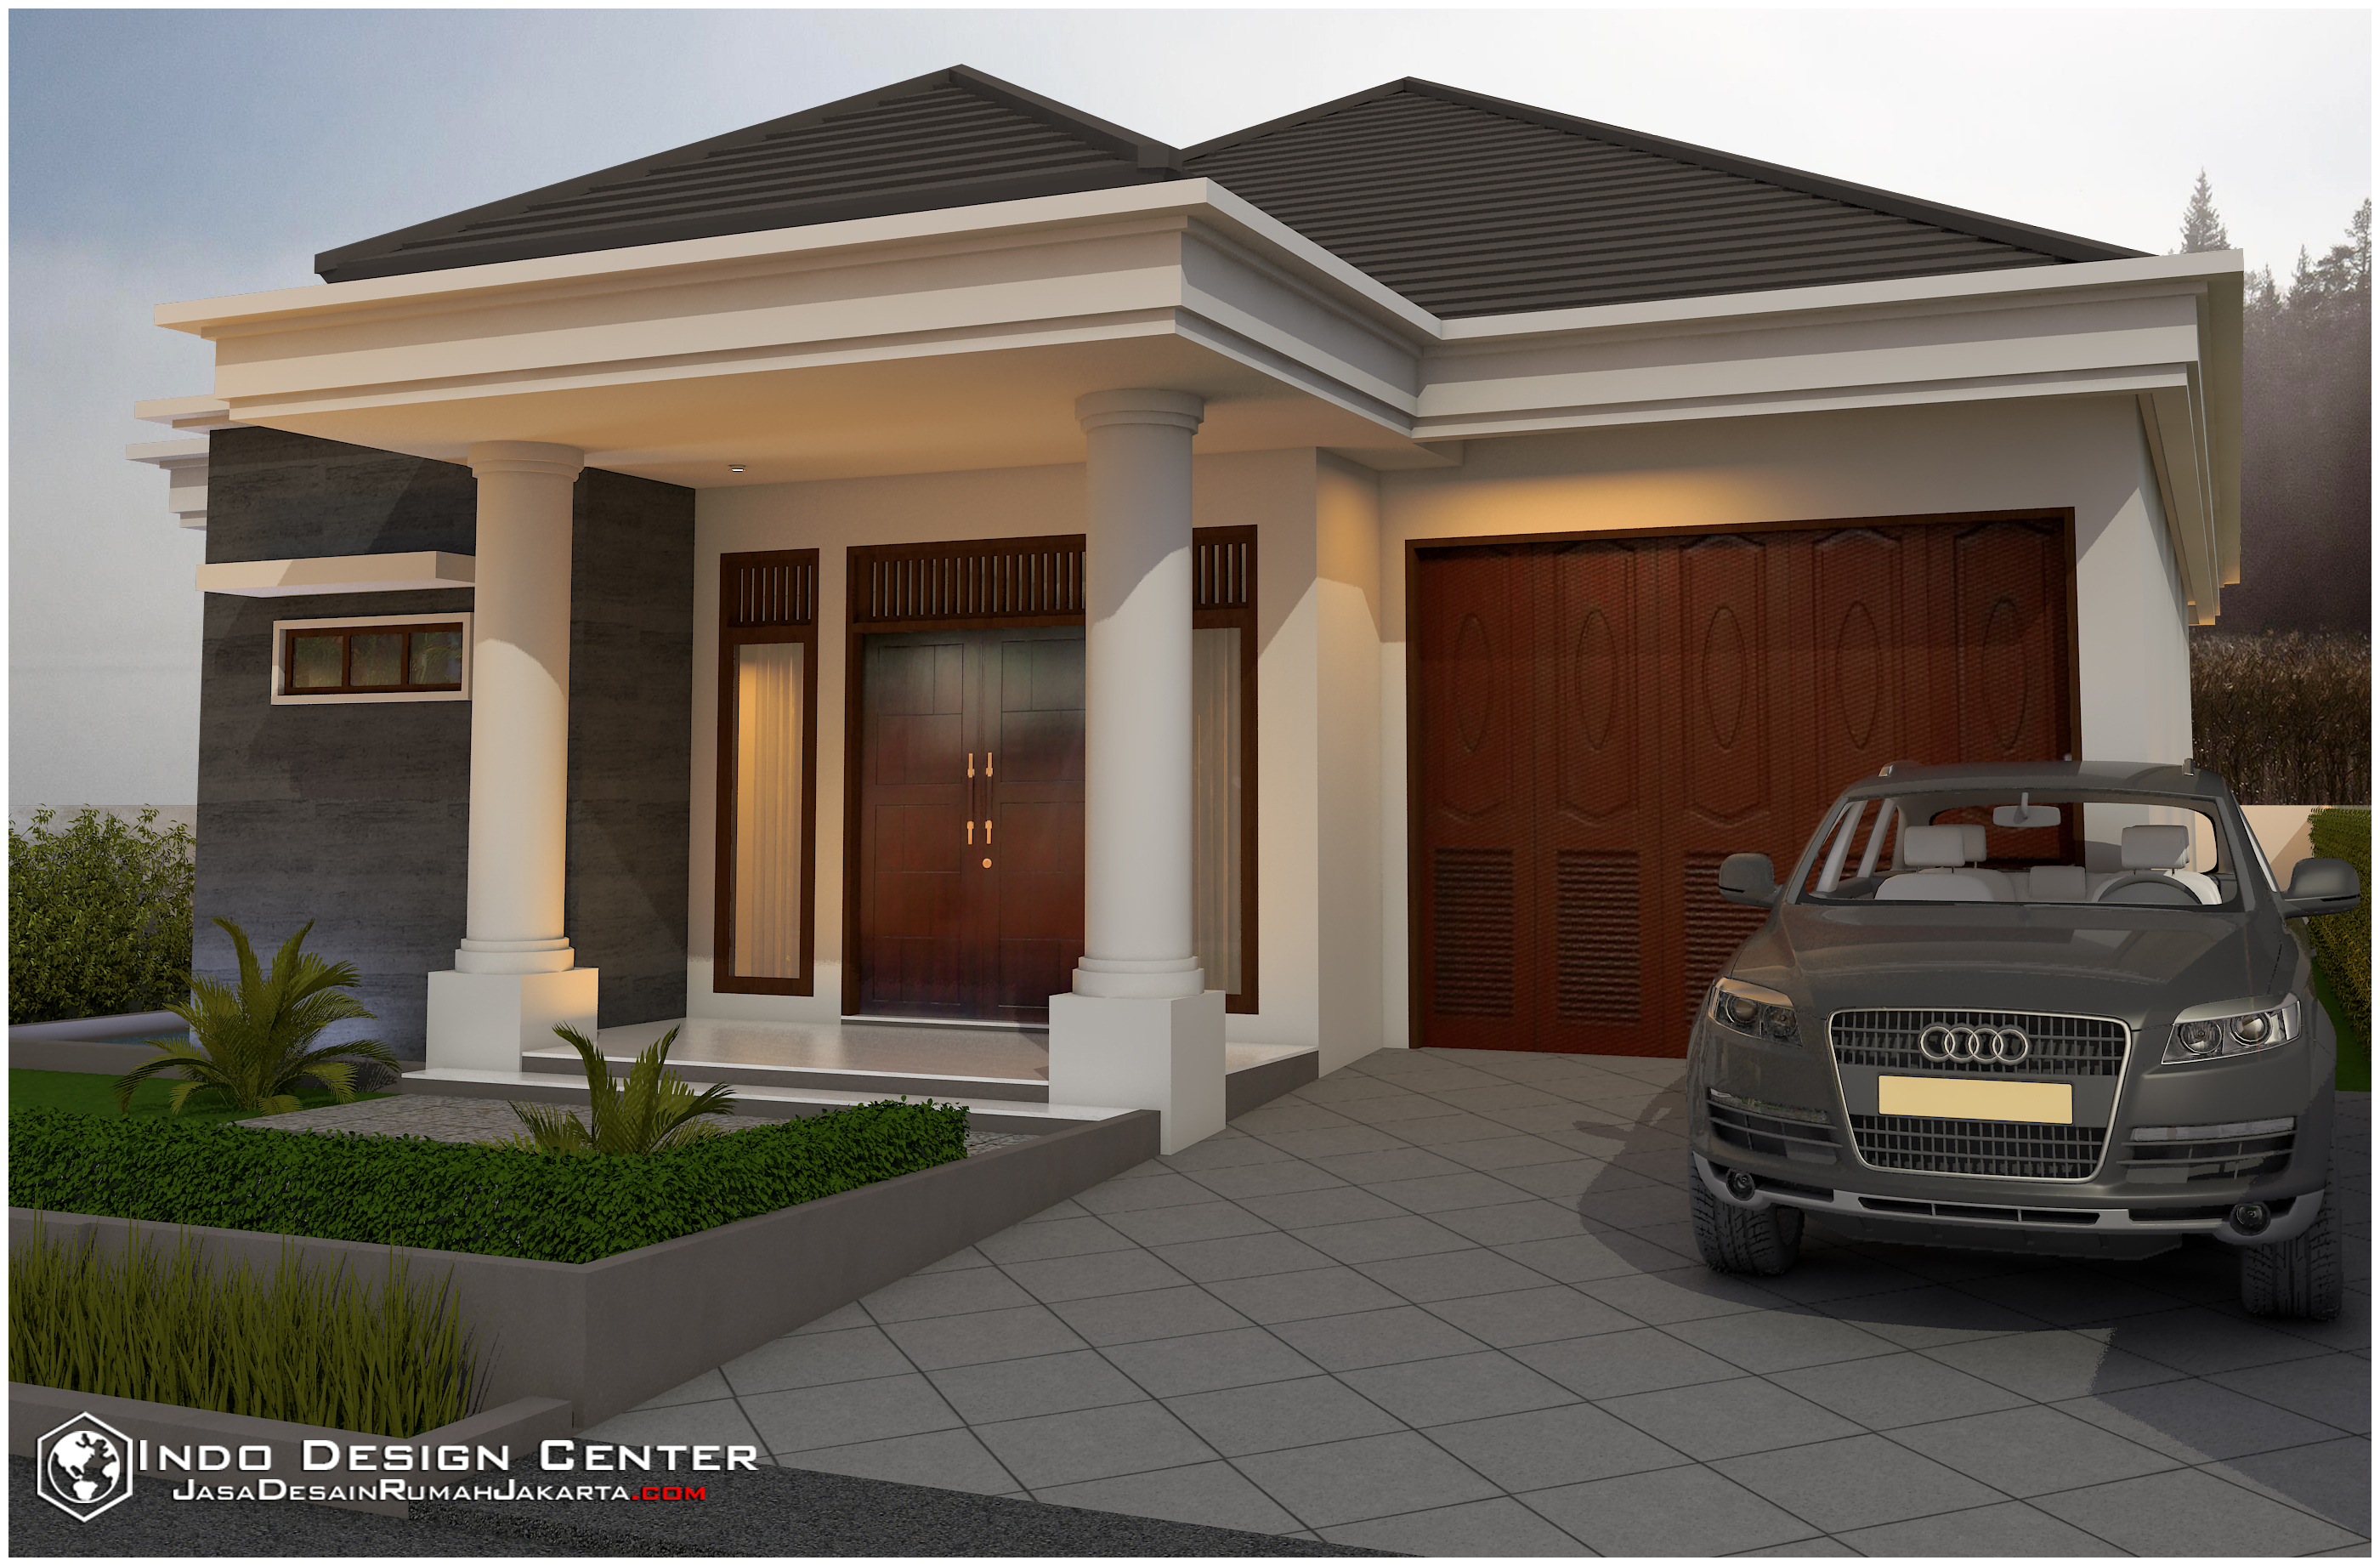 Gambar Rumah Minimalis Terbaru Jasa Desain Rumah Jakarta 021